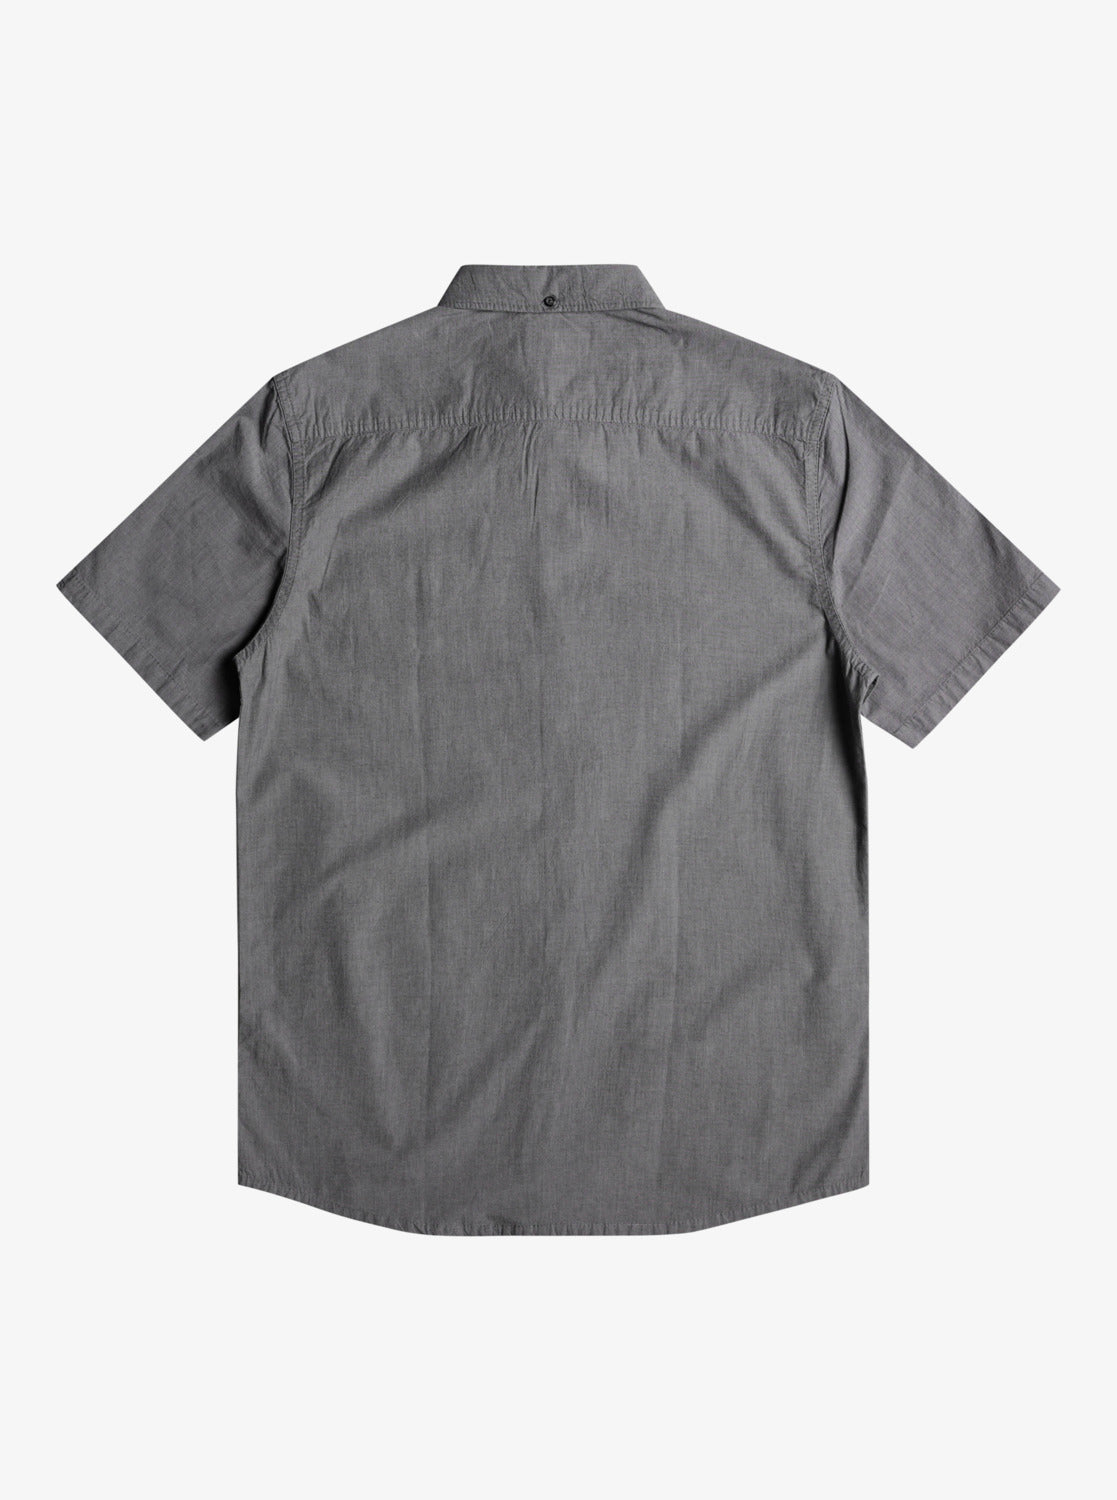 Winfall Short Sleeve Shirt - EQYWT04124